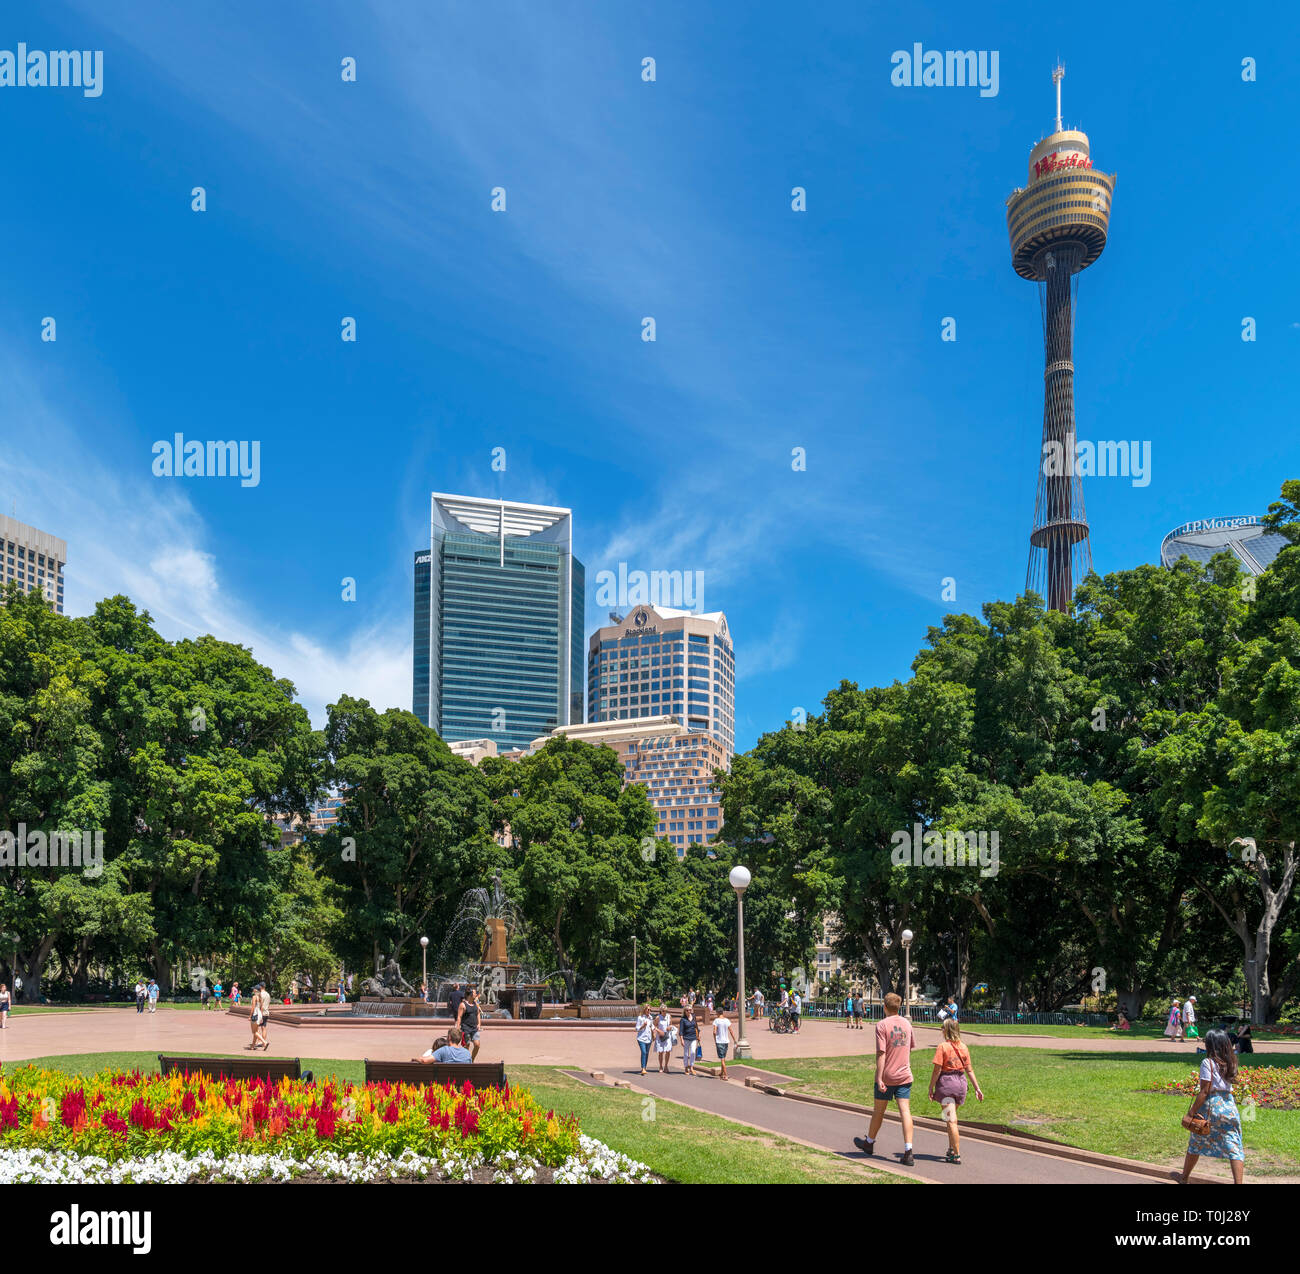 La Torre de Sydney y el Distrito Central de Negocios (CBD) de Hyde Park, Sydney, Australia. Foto de stock